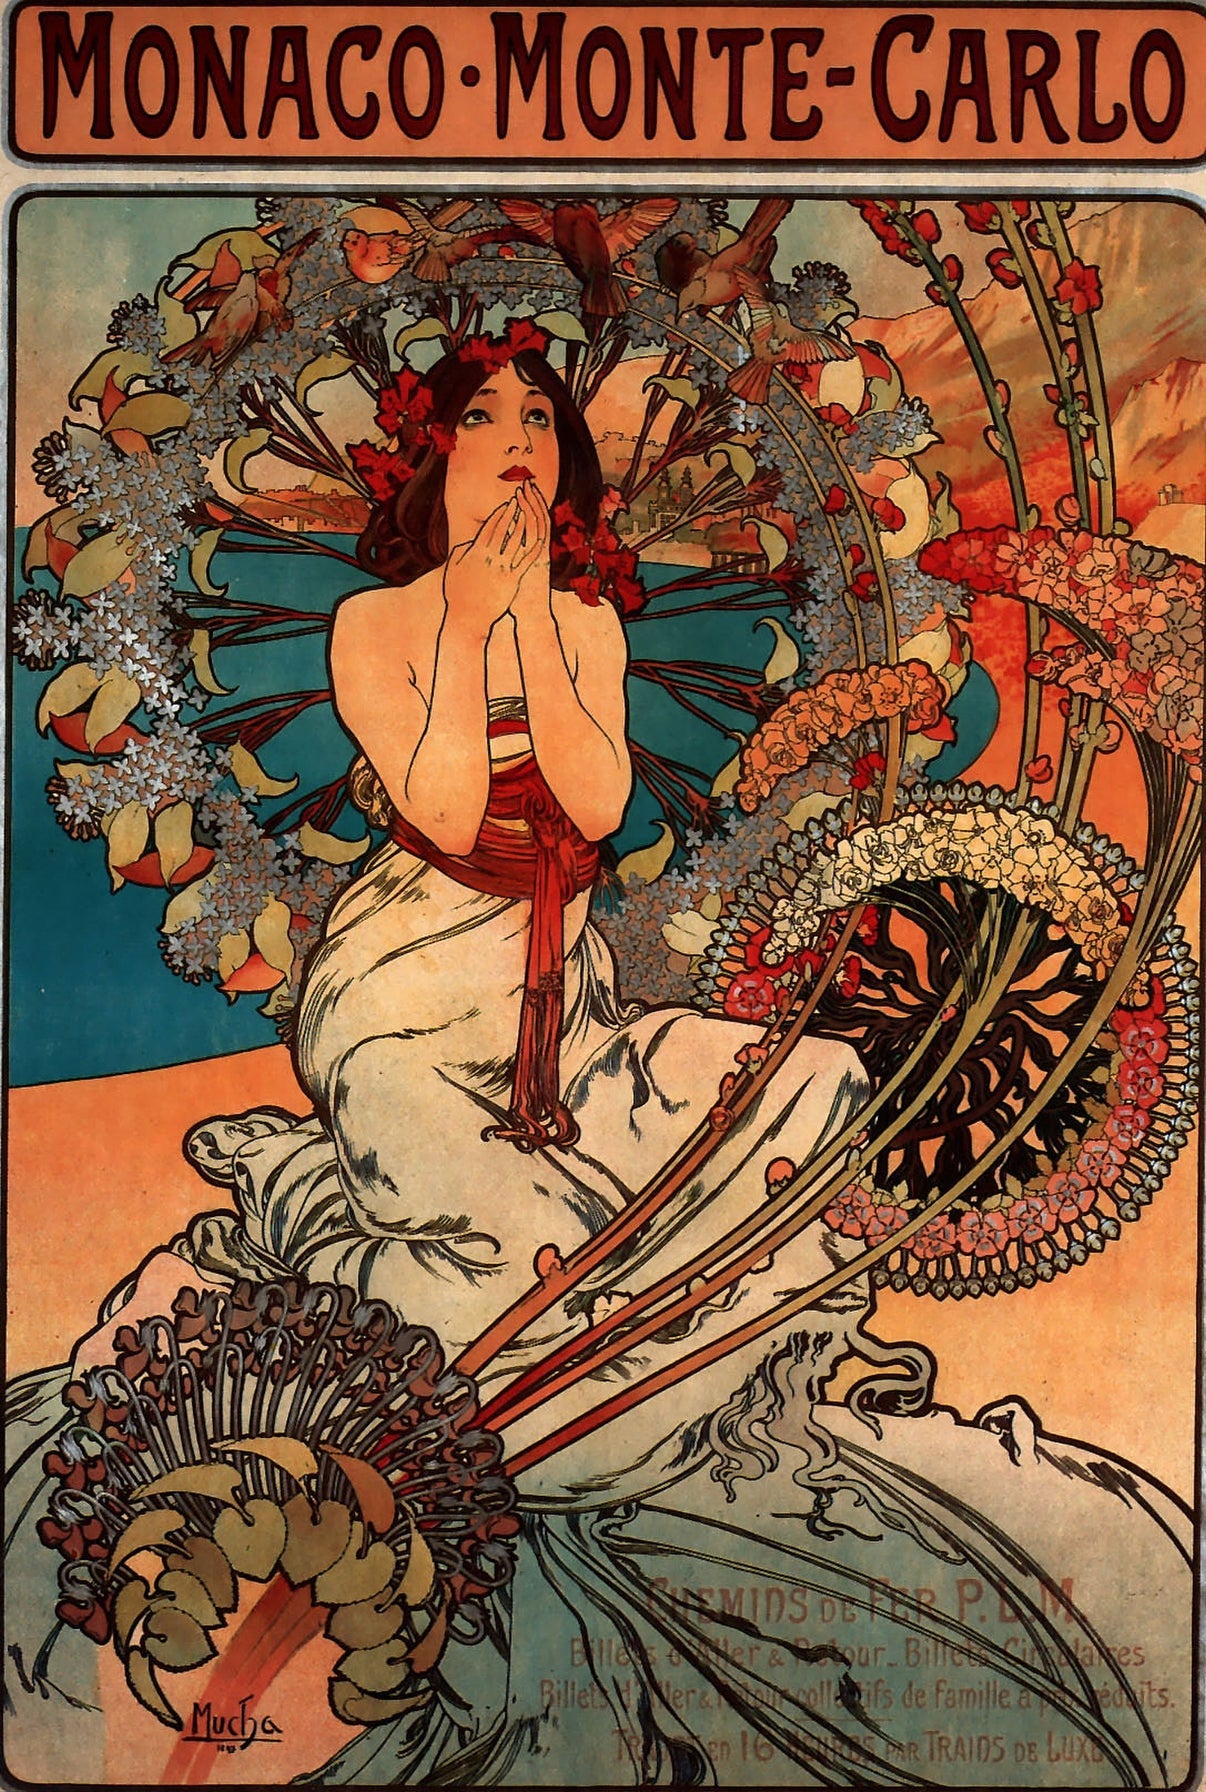 Art nouveau Monaco Poster (1890s) | Alphonse Mucha prints Posters, Prints, & Visual Artwork The Trumpet Shop   